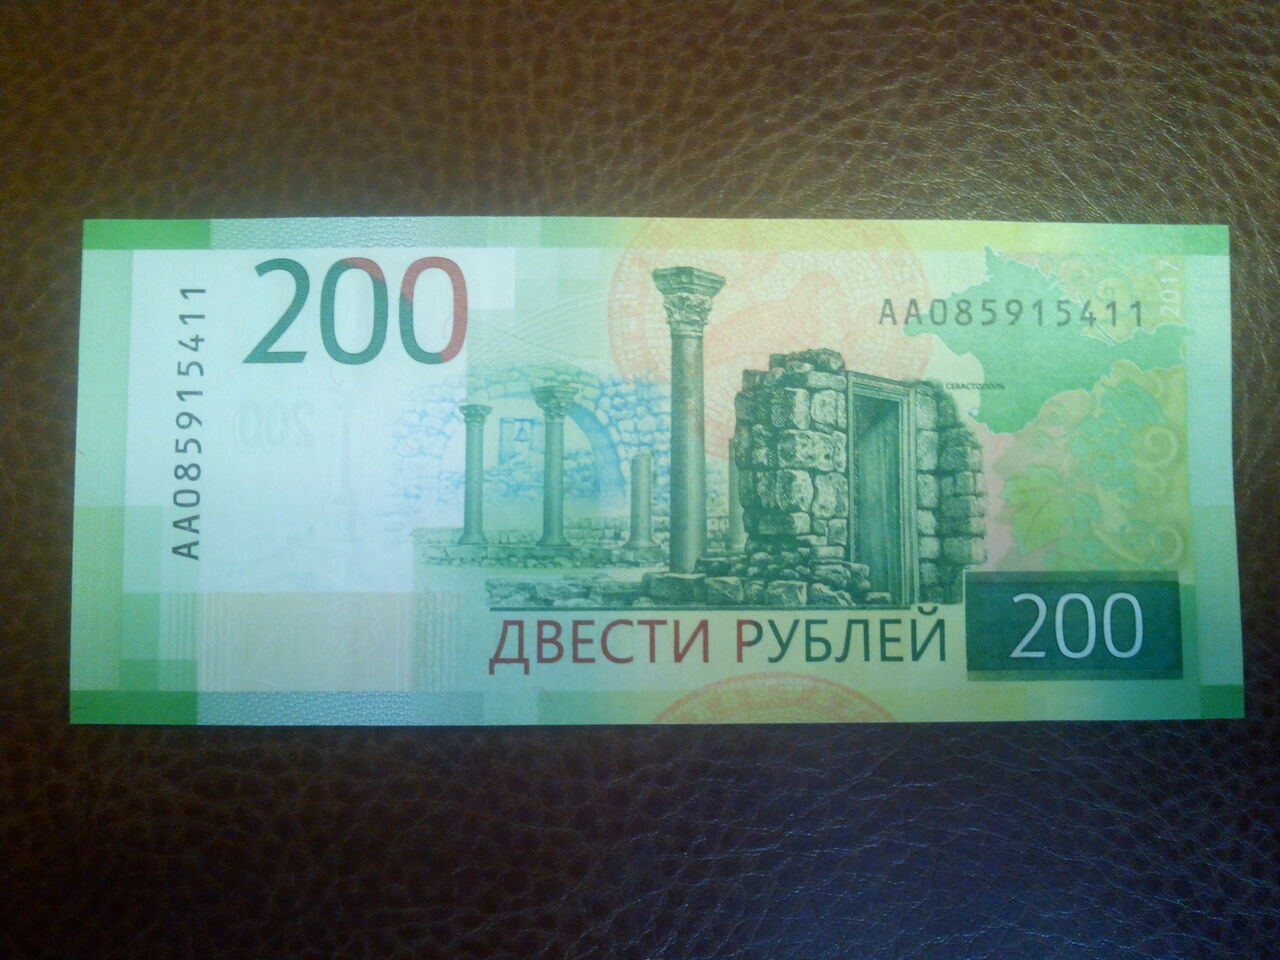 200 рублей бумажные. 200 Рублей банкнота. 200 Рублей банкнота Крым. Бумажная купюра 200 рублей.